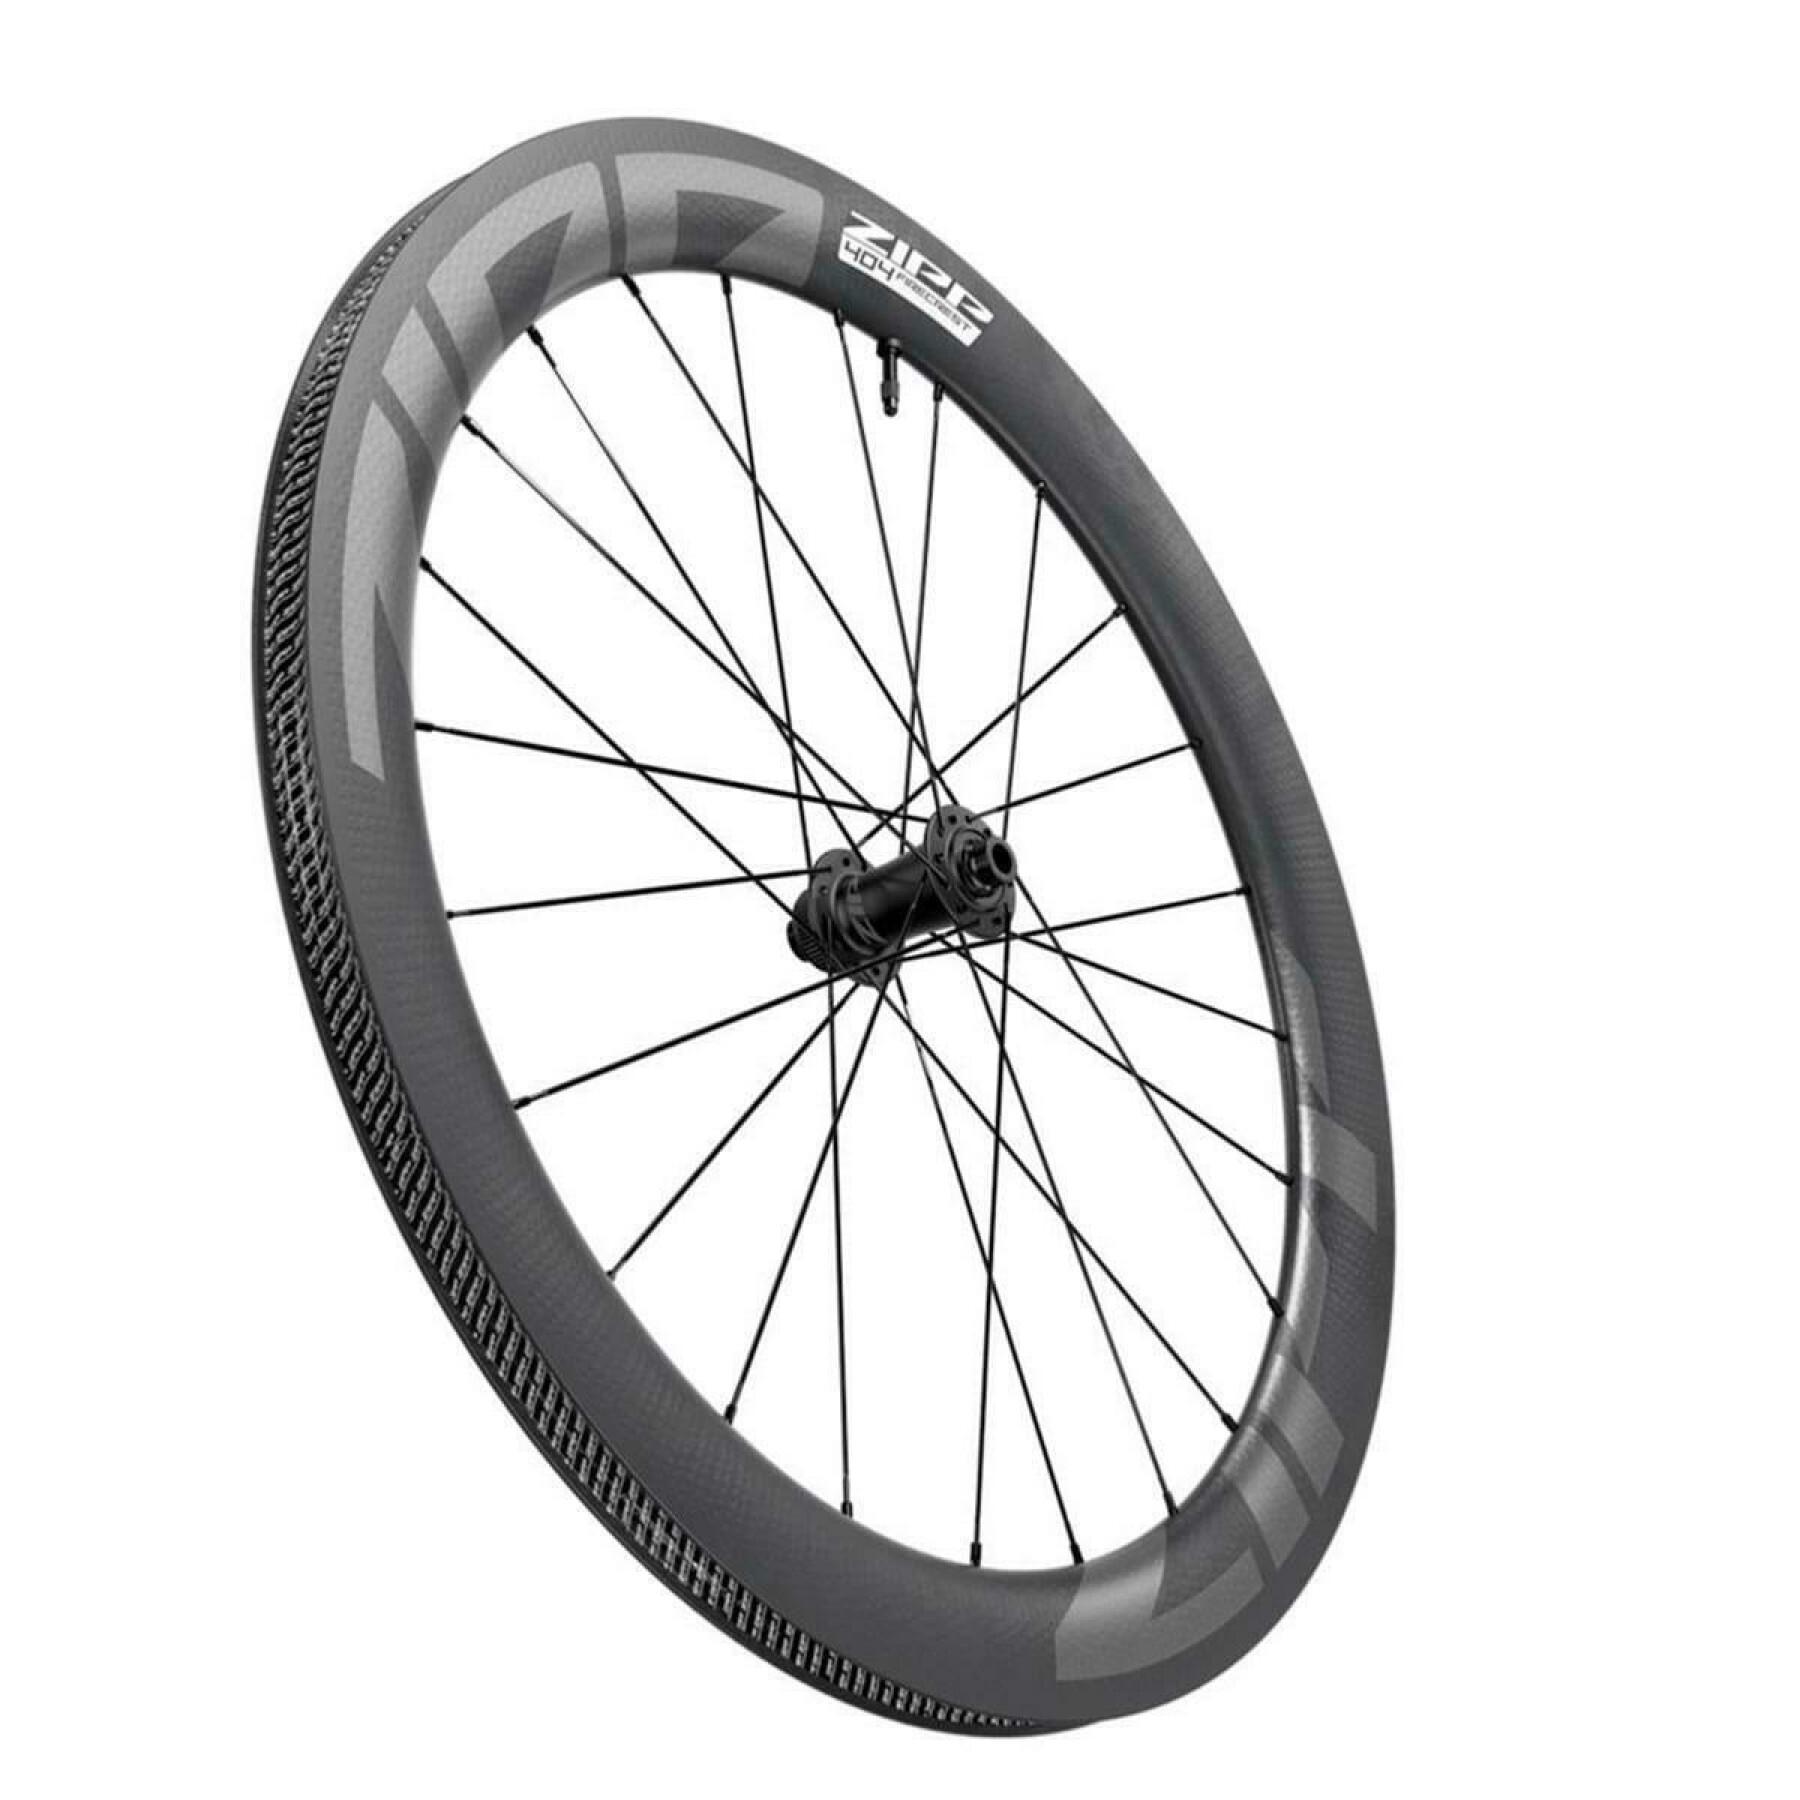 Bike wheel Zipp 404 Firecrest Carbon Tbl Disc Ctl Avant 12X100mm